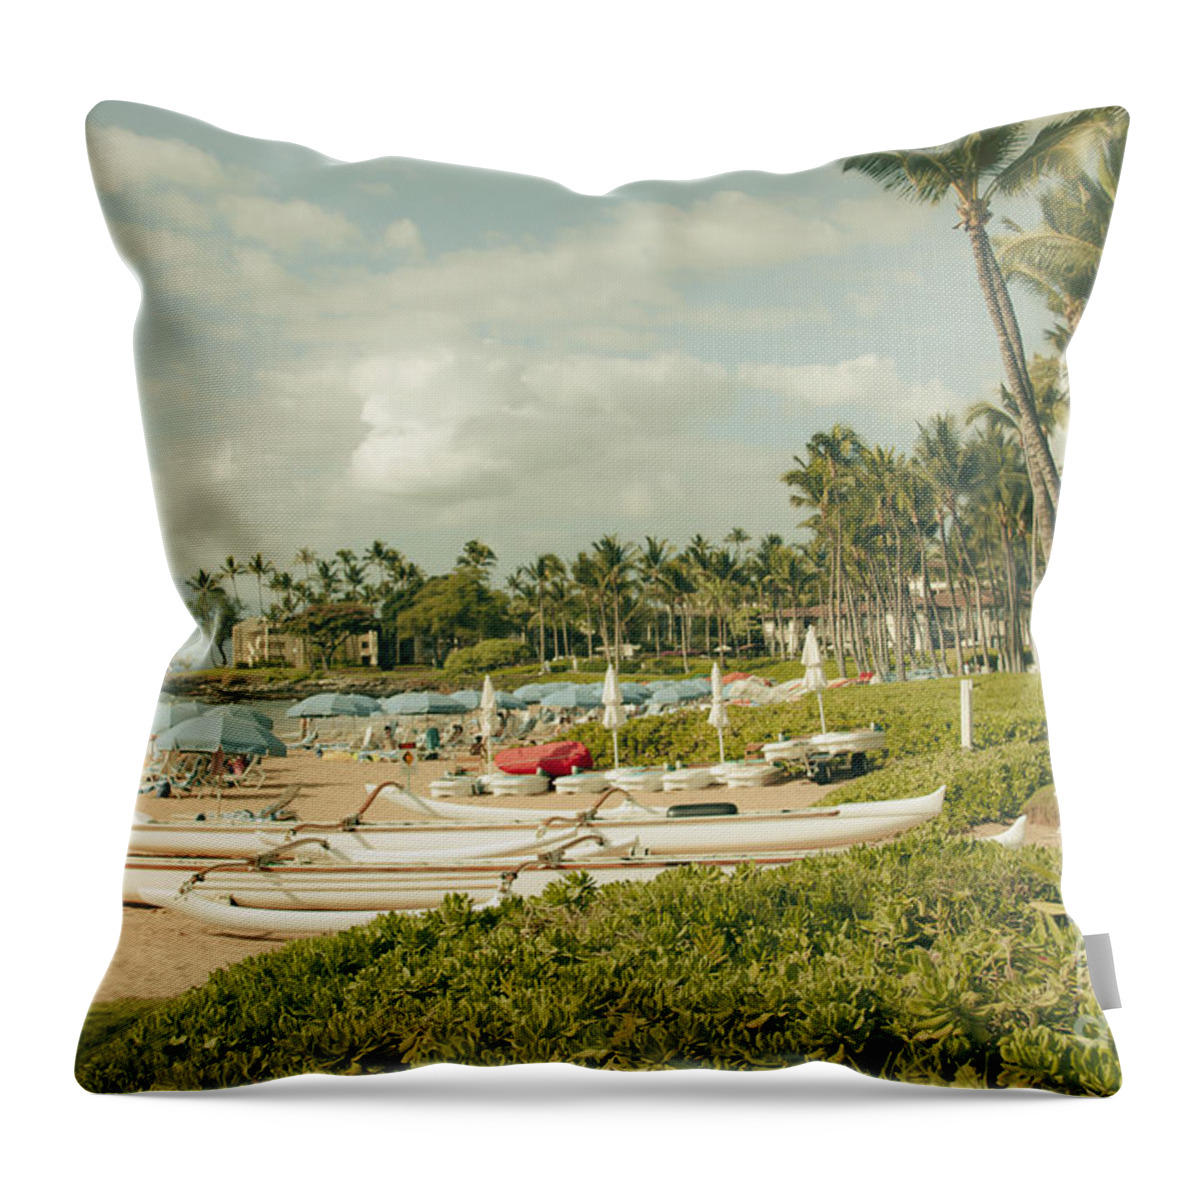 Aloha Throw Pillow featuring the photograph Wailea Beach Maui Hawaii #1 by Sharon Mau